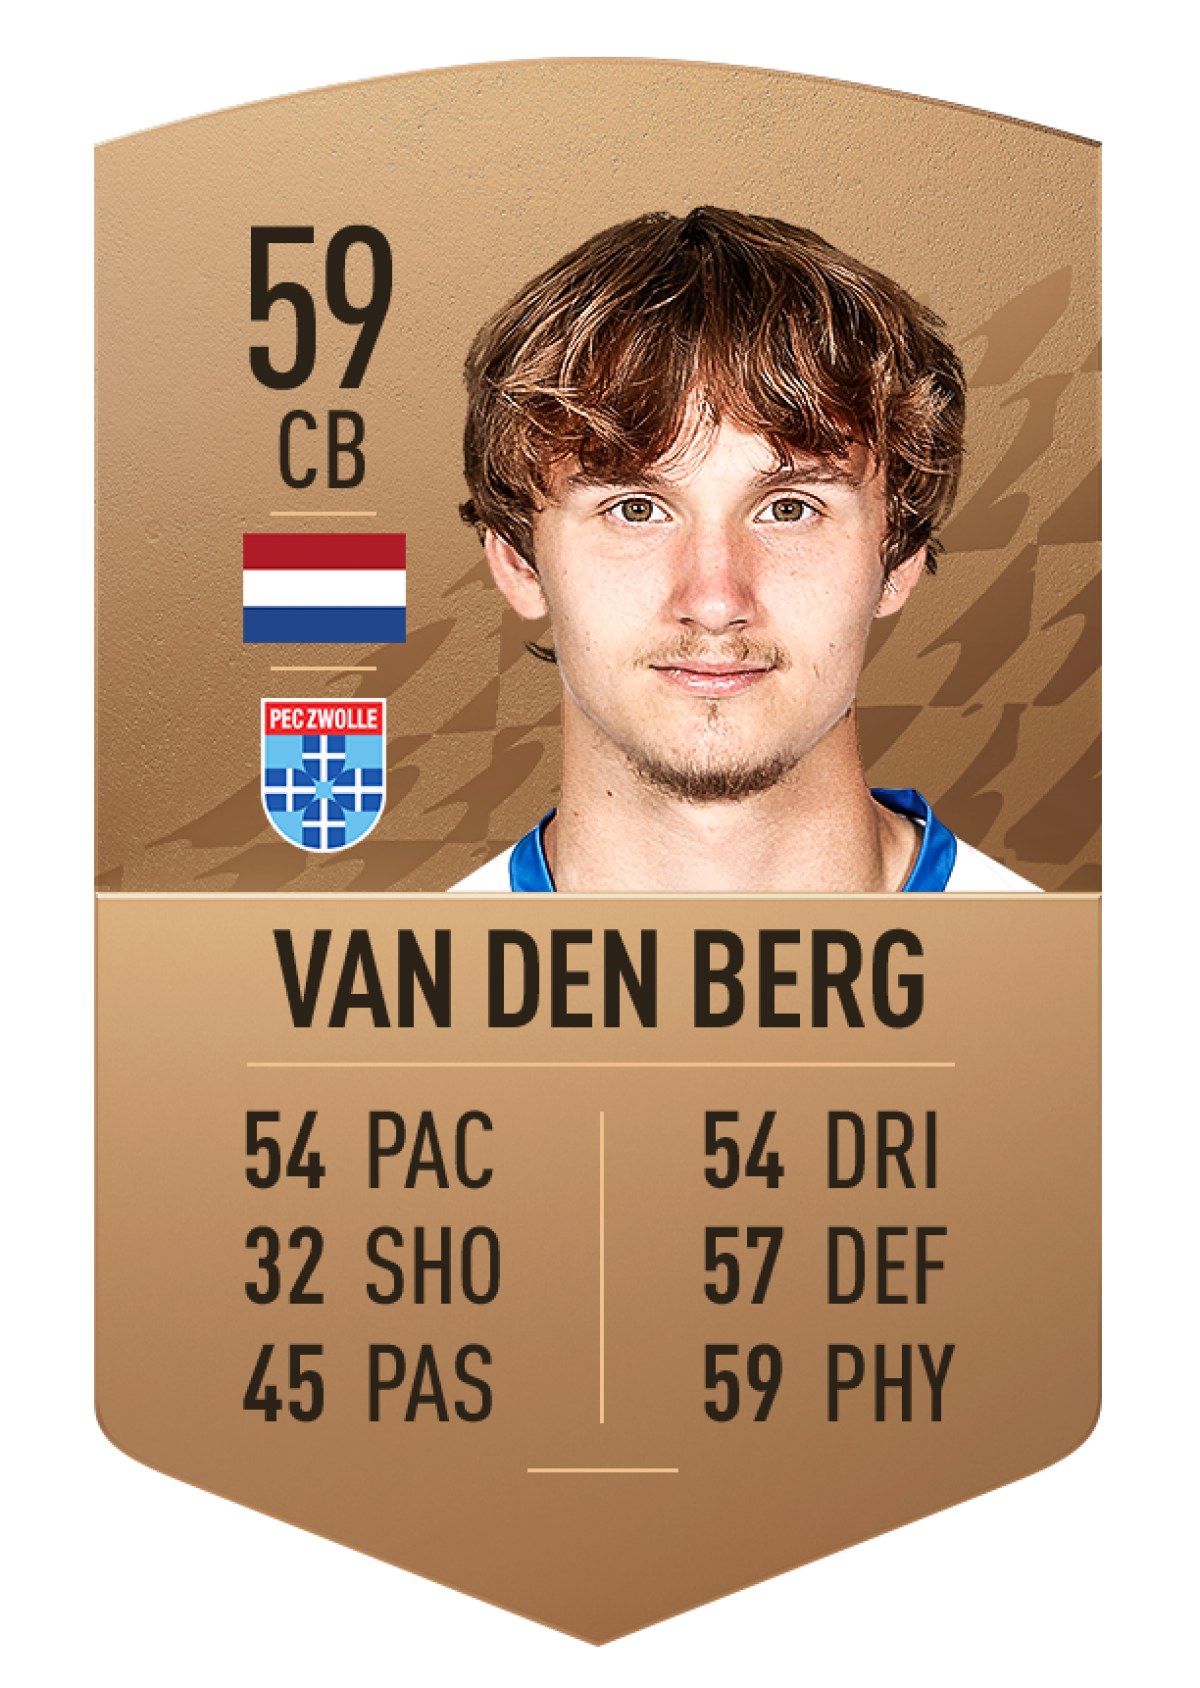 7. Rav van den Berg | PEC Zwolle | Chỉ số ban đầu: 59 | Chỉ số tiềm năng: 83 (+24)